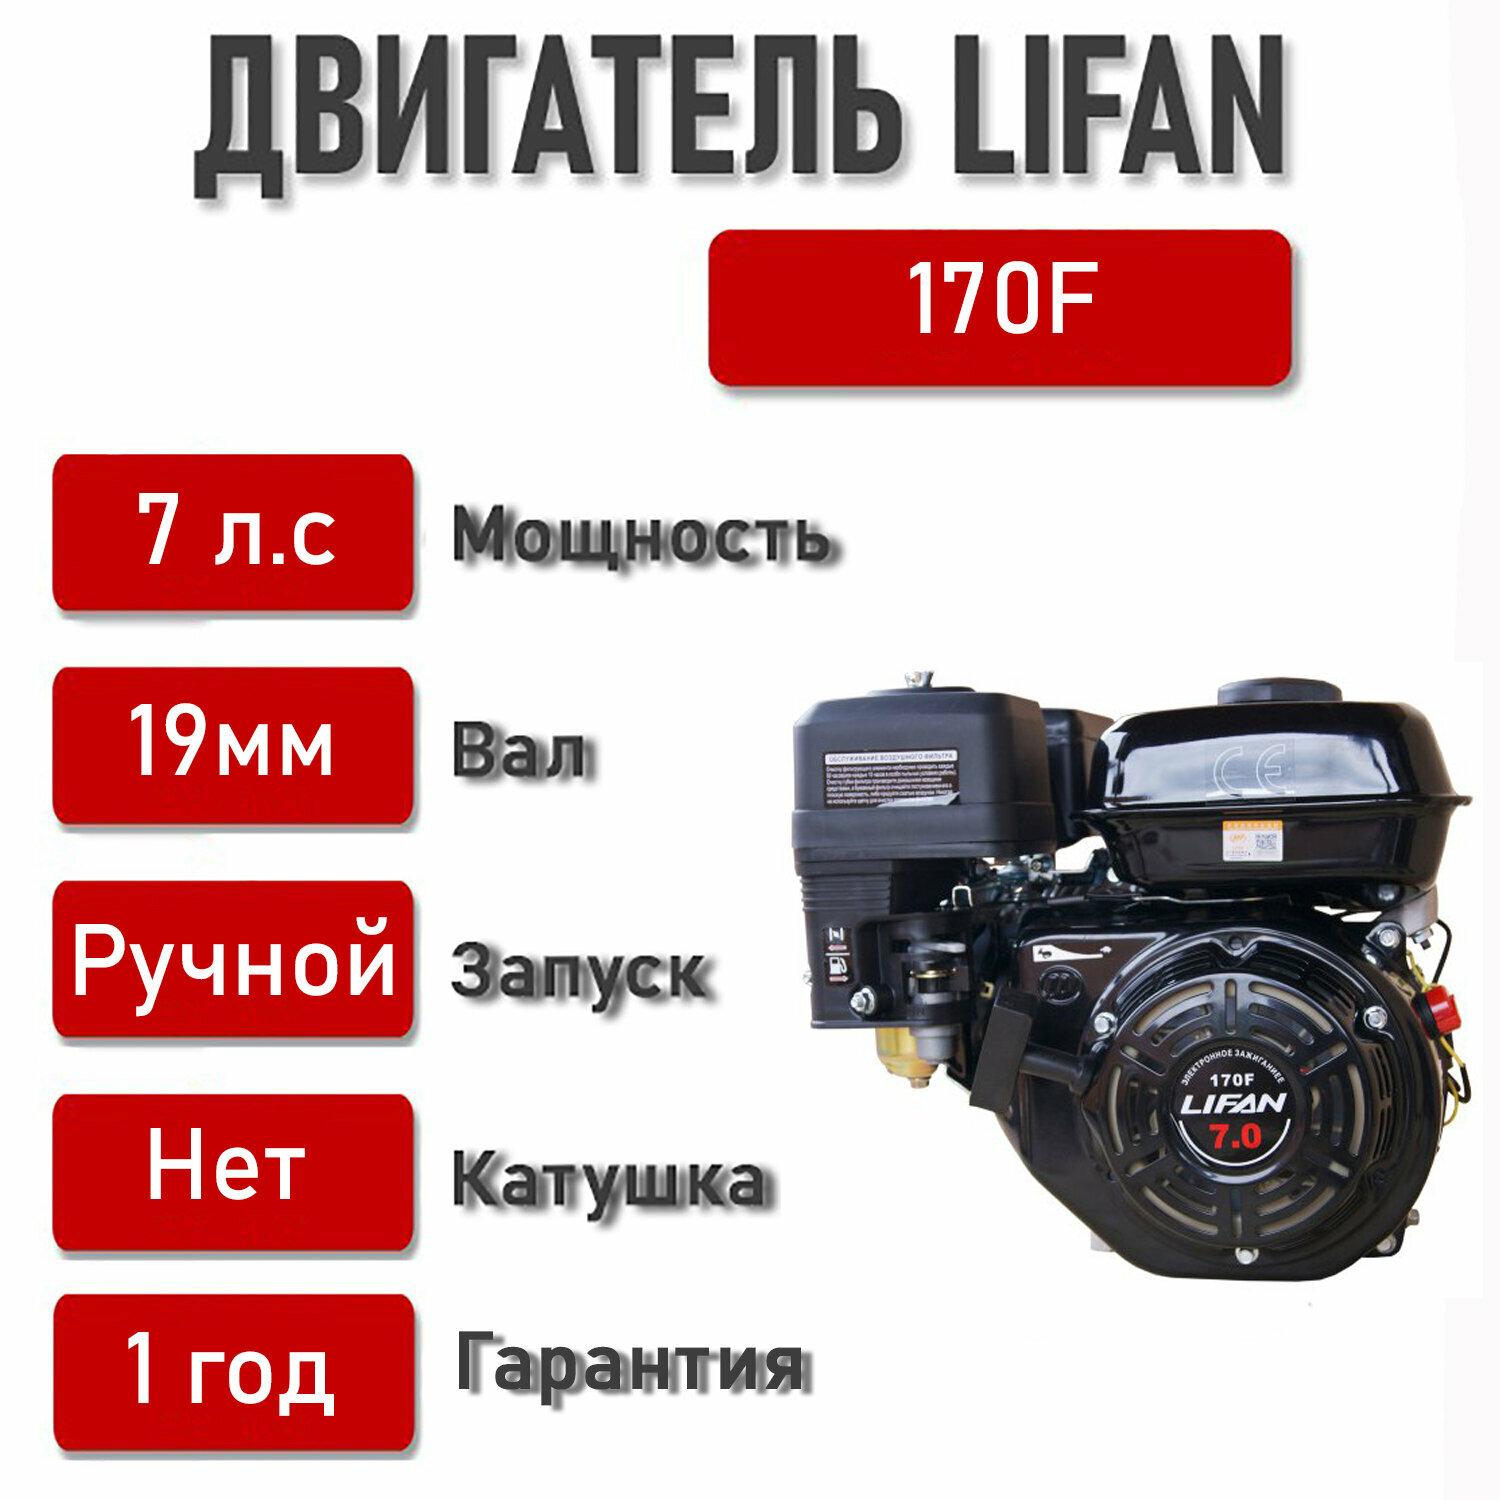 Двигатель LIFAN 70 л. с. 170F (мотобуксировщики вал d19)